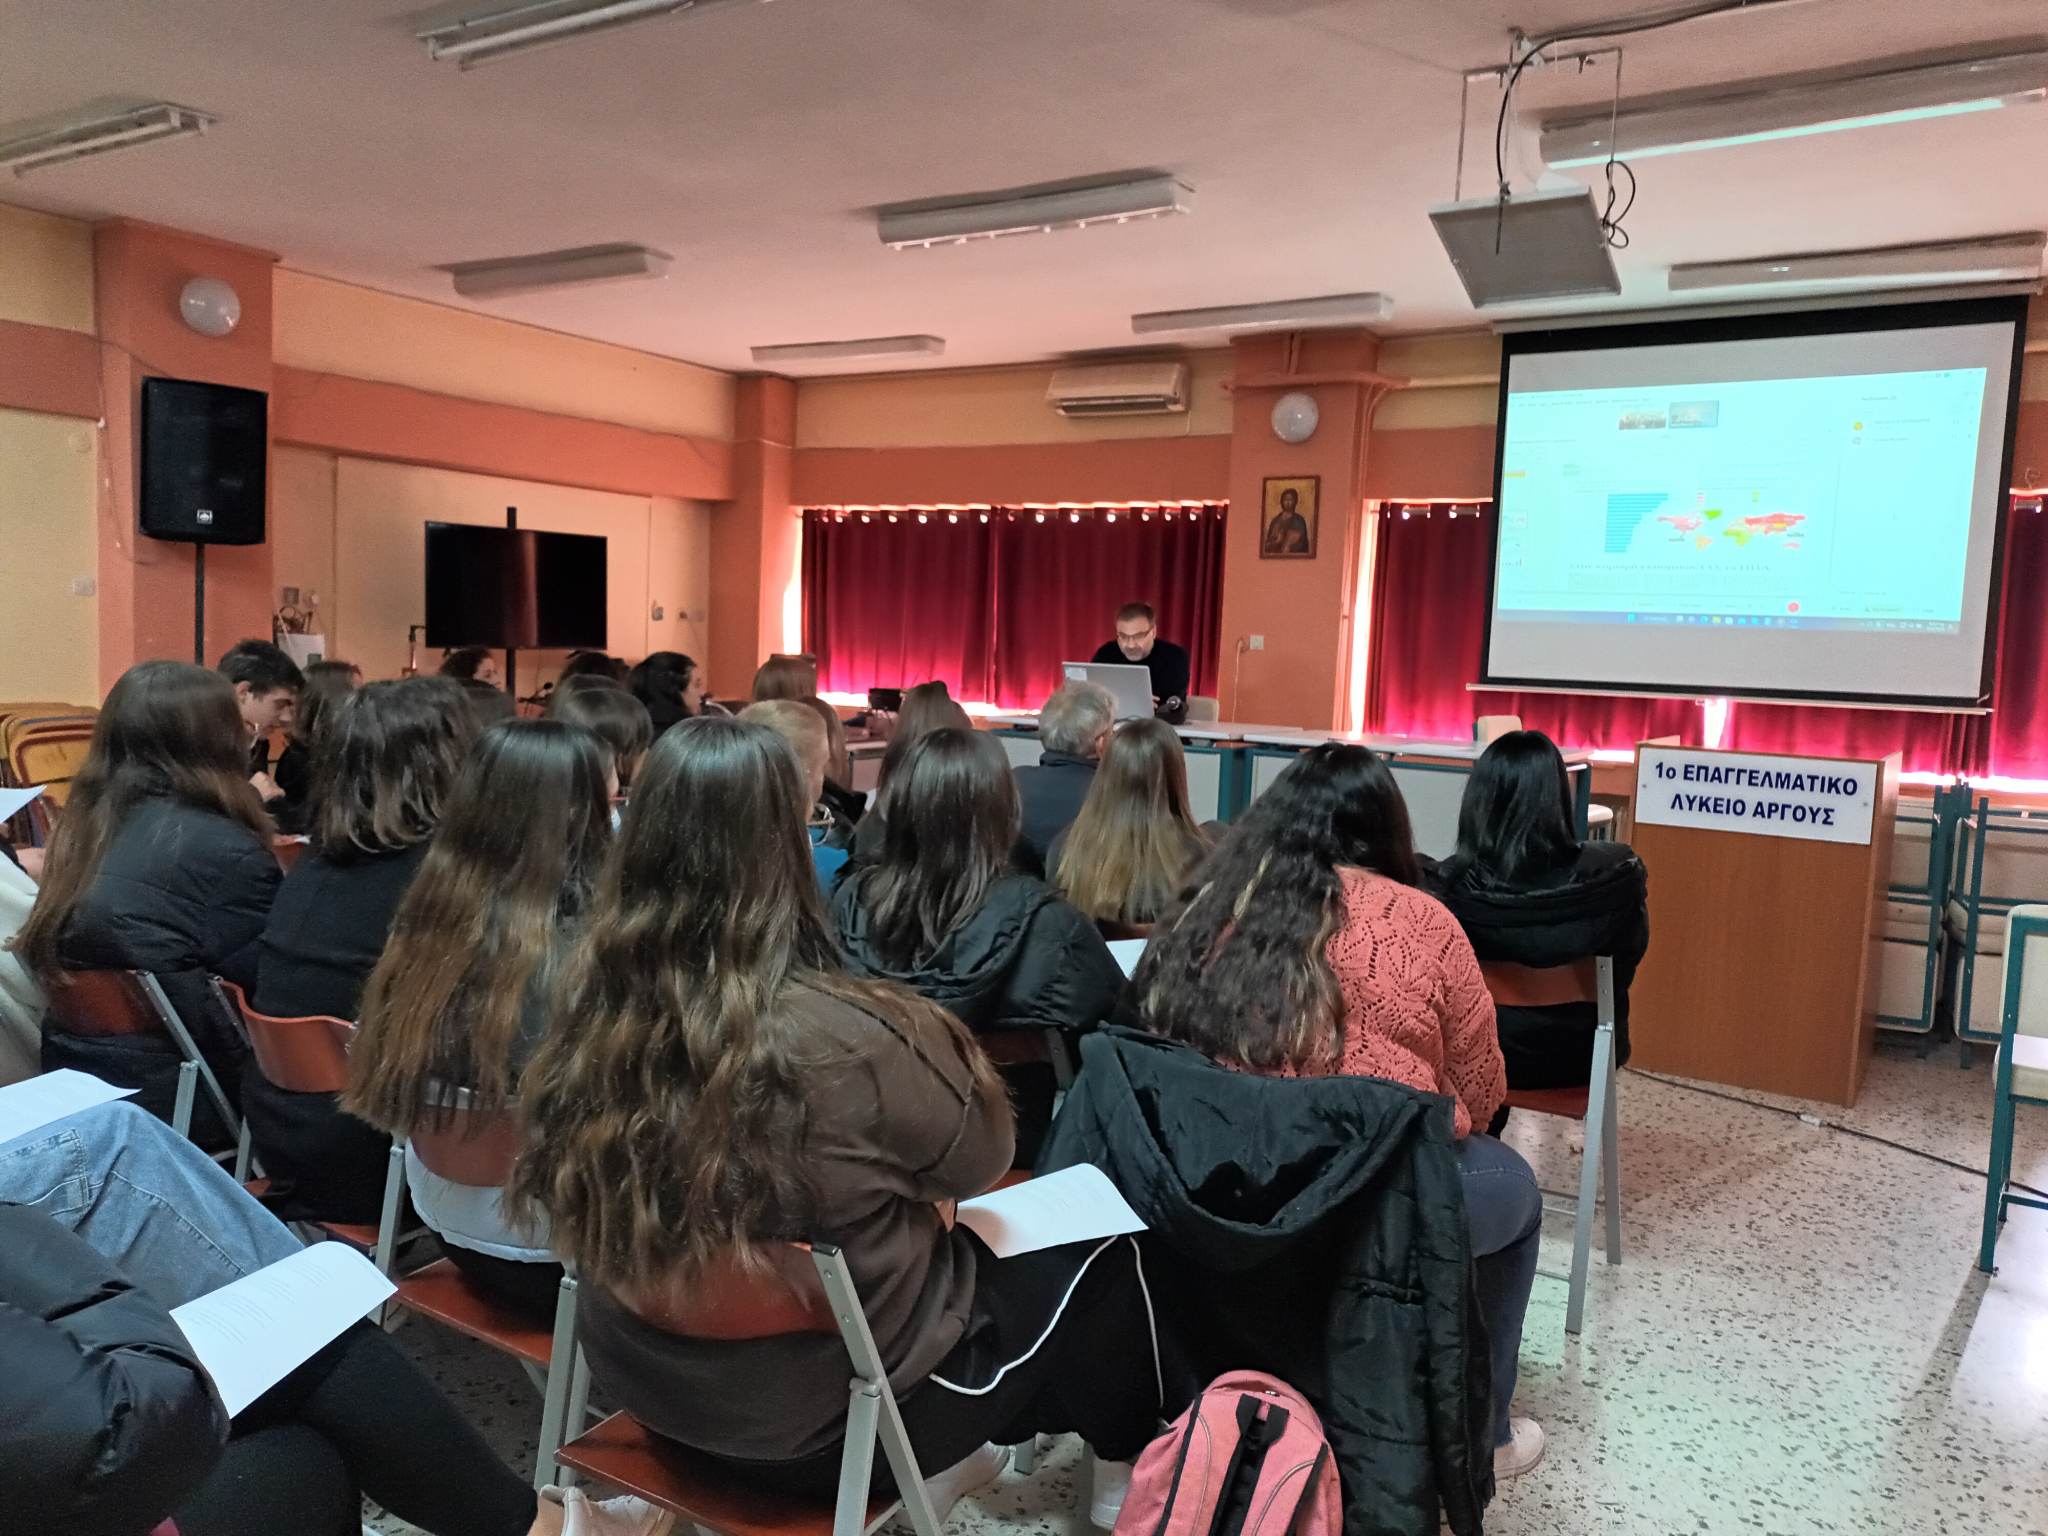 Άργος: Ο Γιάννης Μανιάτης ενημέρωσε τους μαθητές του ΕΠΑΛ για θέματα ενέργειας και περιβάλλοντος